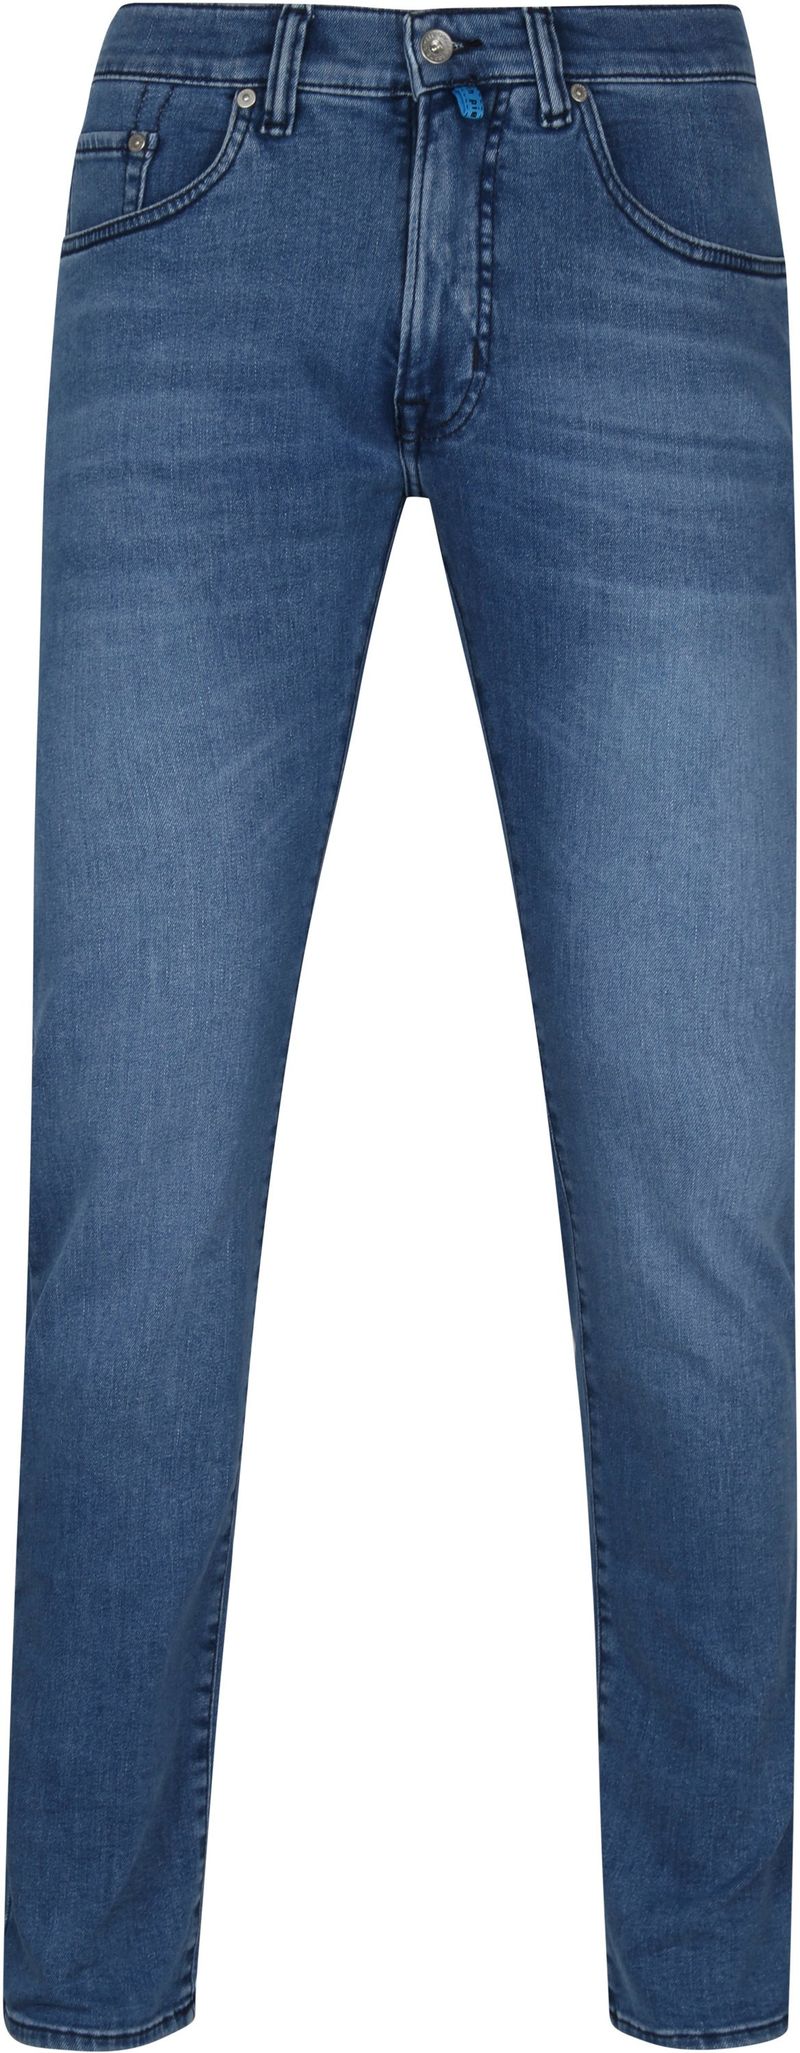 Pierre Cardin Antibes Jeans Dunkelblau  - Größe W 31 - L 34 günstig online kaufen